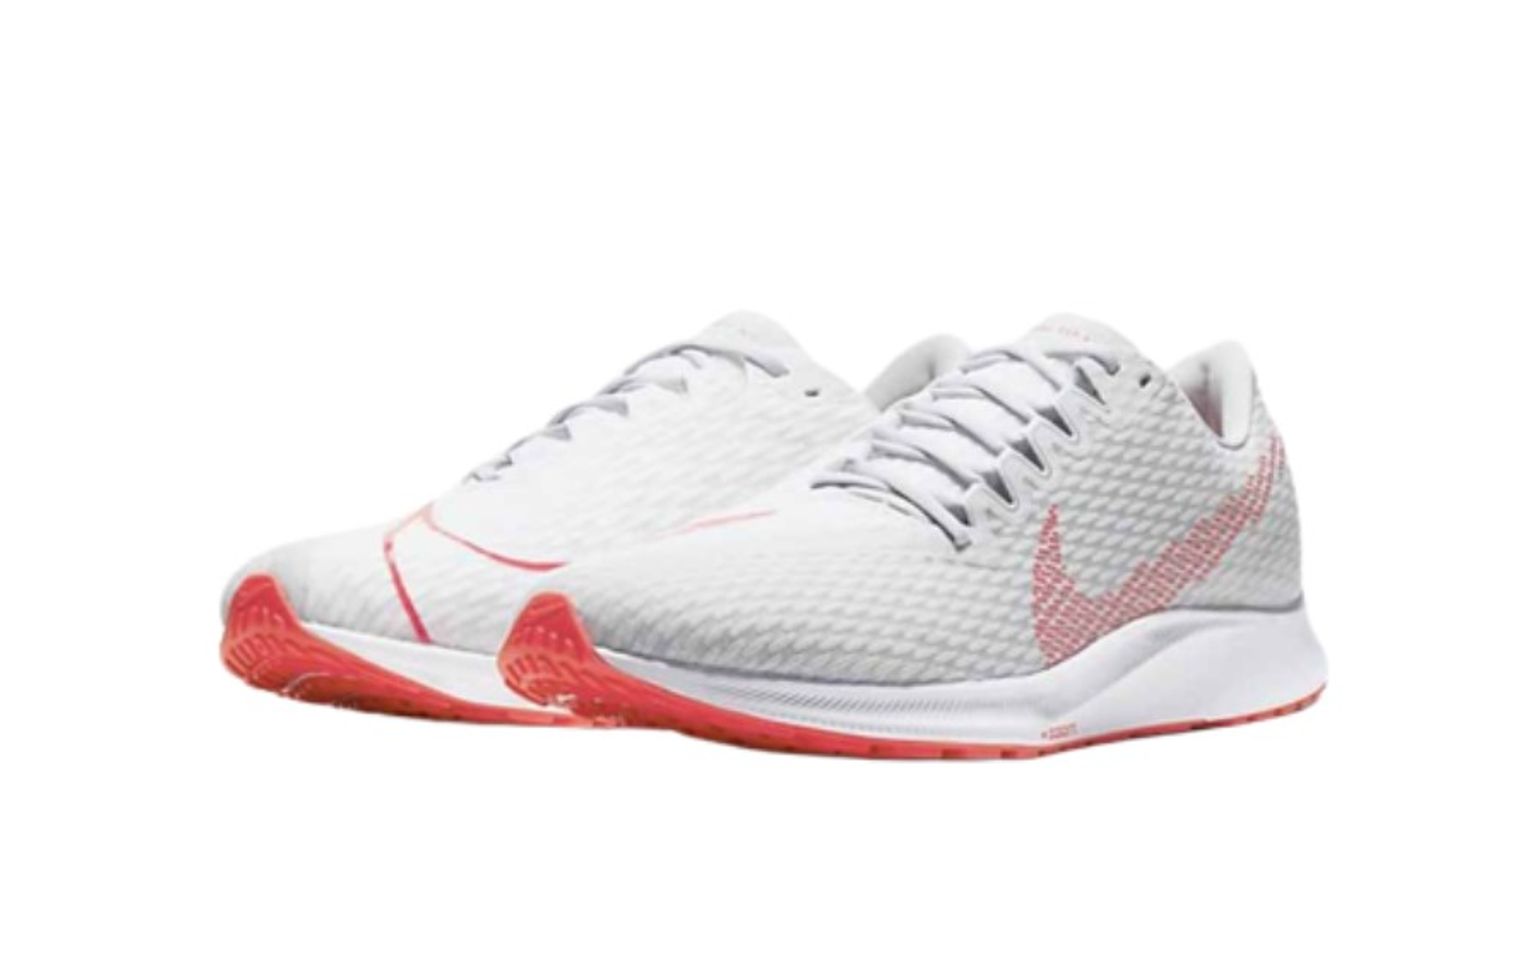 Giày thể thao Nike Zoom Rival Fly 2 màu trắng xám